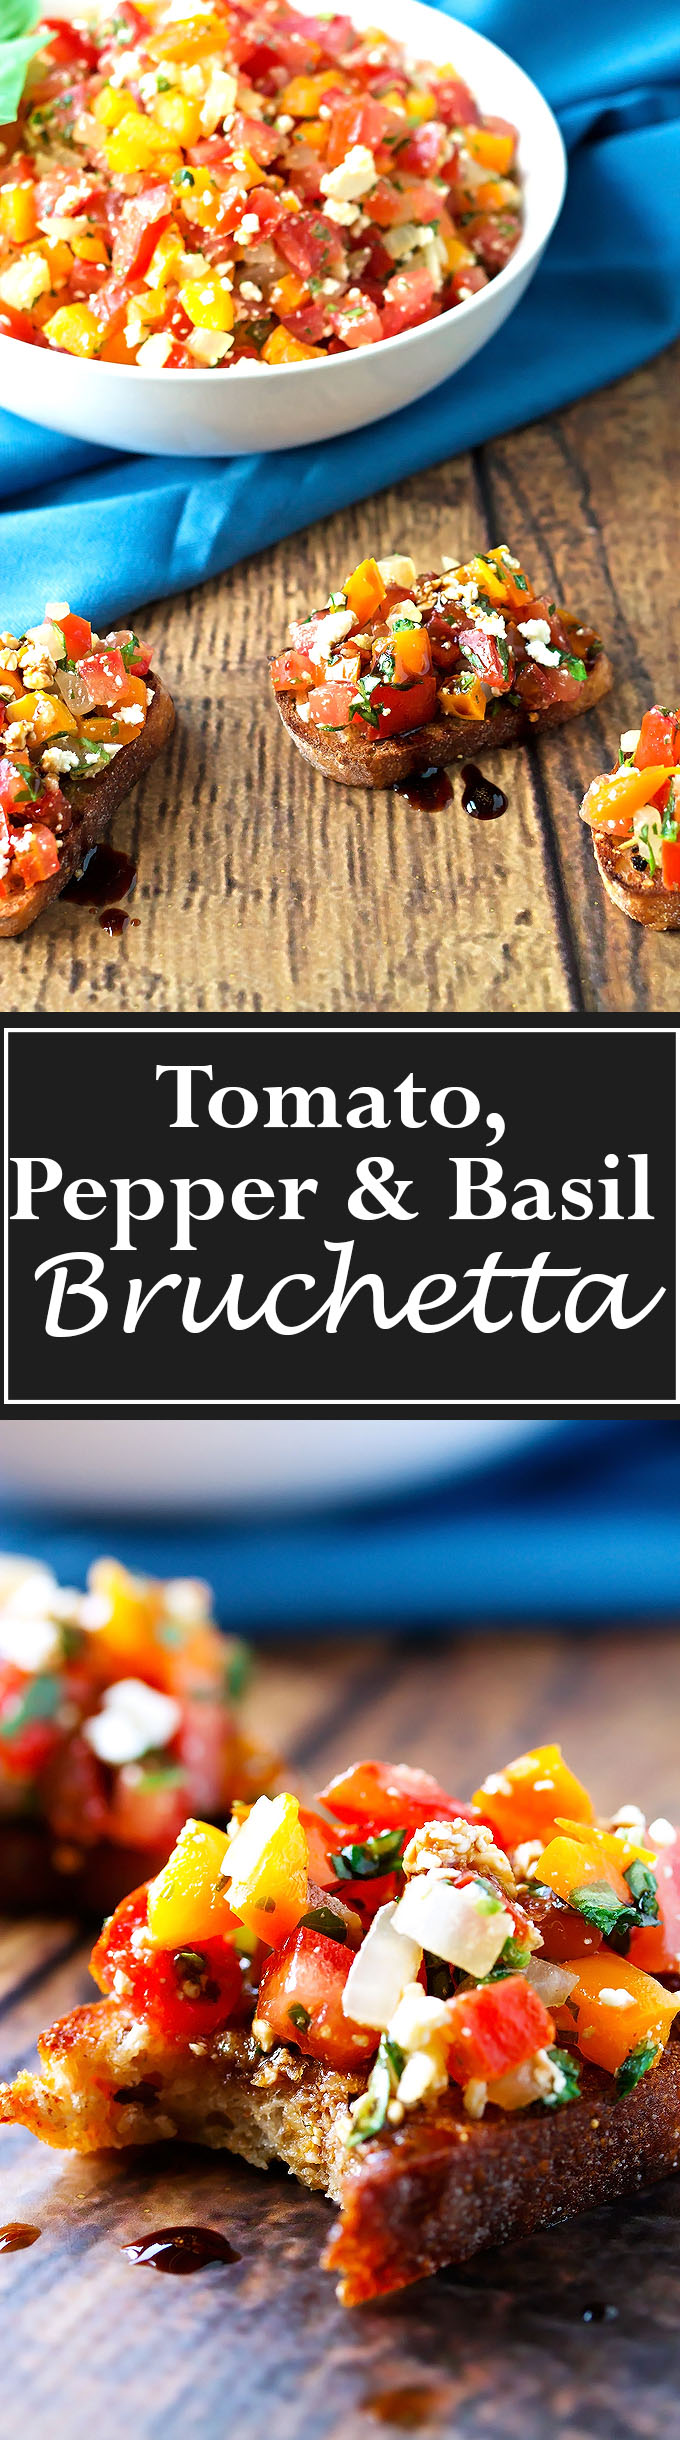 Tomato, Pepper & Basil Bruschetta